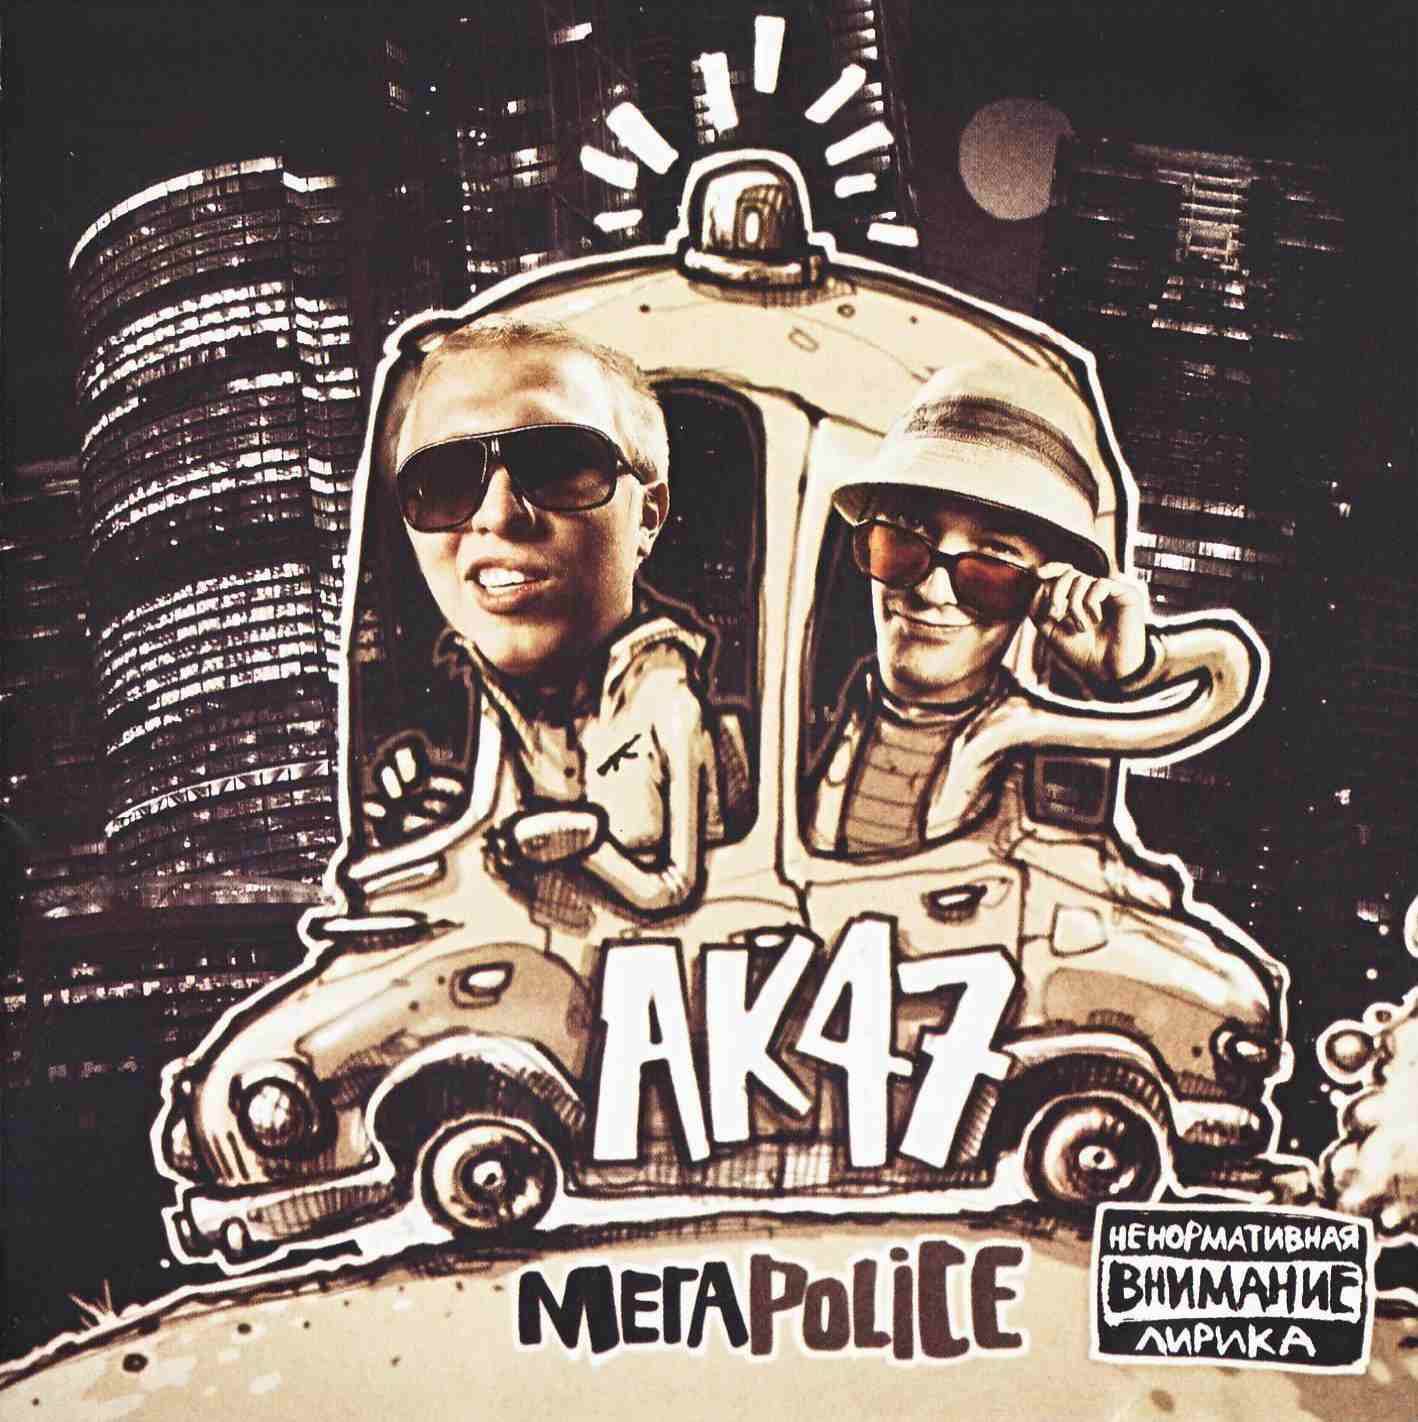 AK 47 - МегаPolice (2010) Скачать Бесплатно - Музыка - Софт MP3.